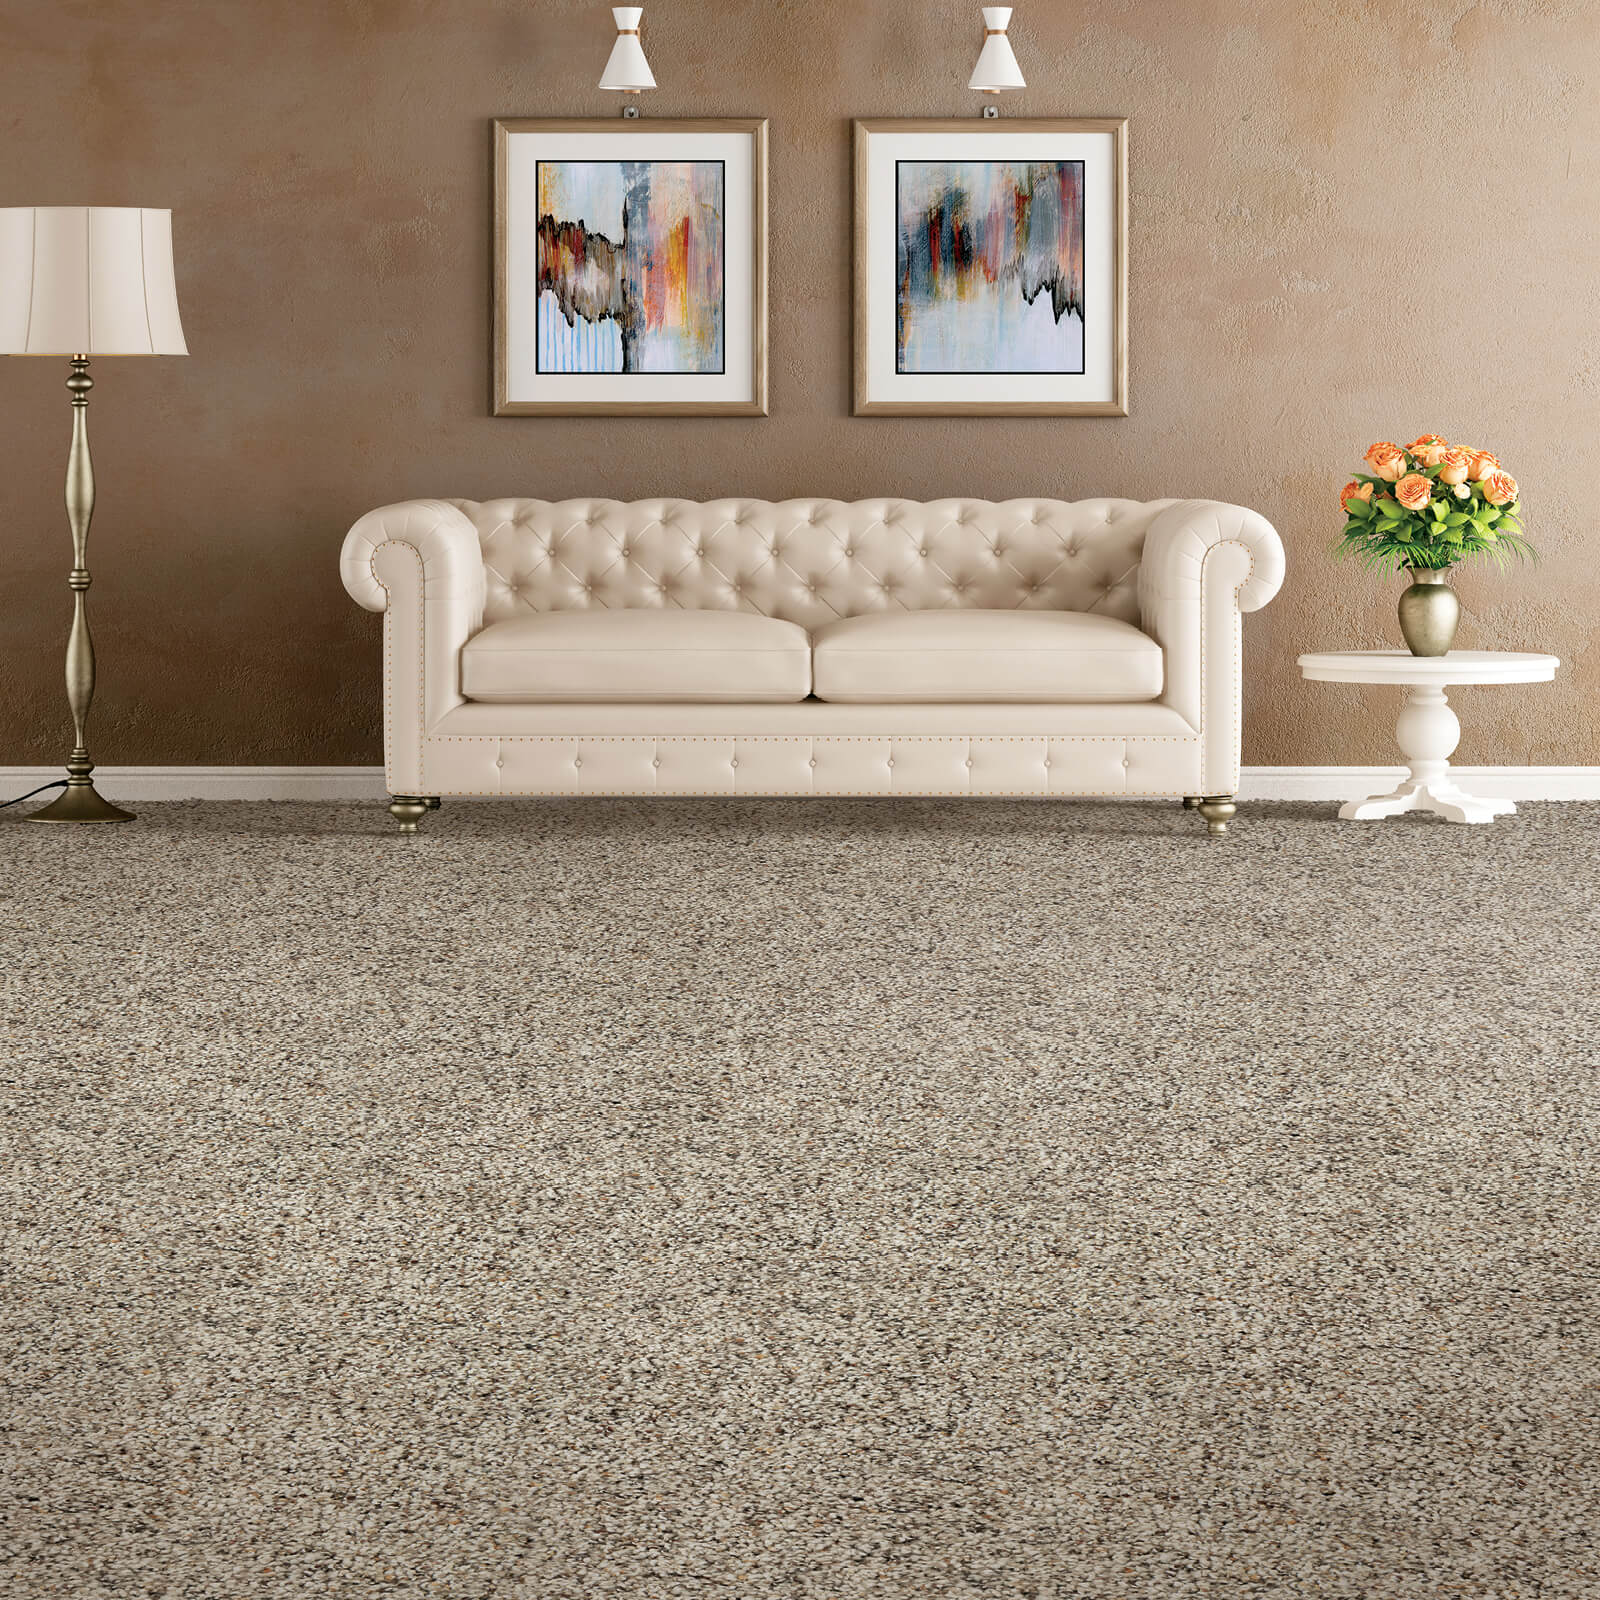 Carpet flooring | J/K Carpet Center, Inc